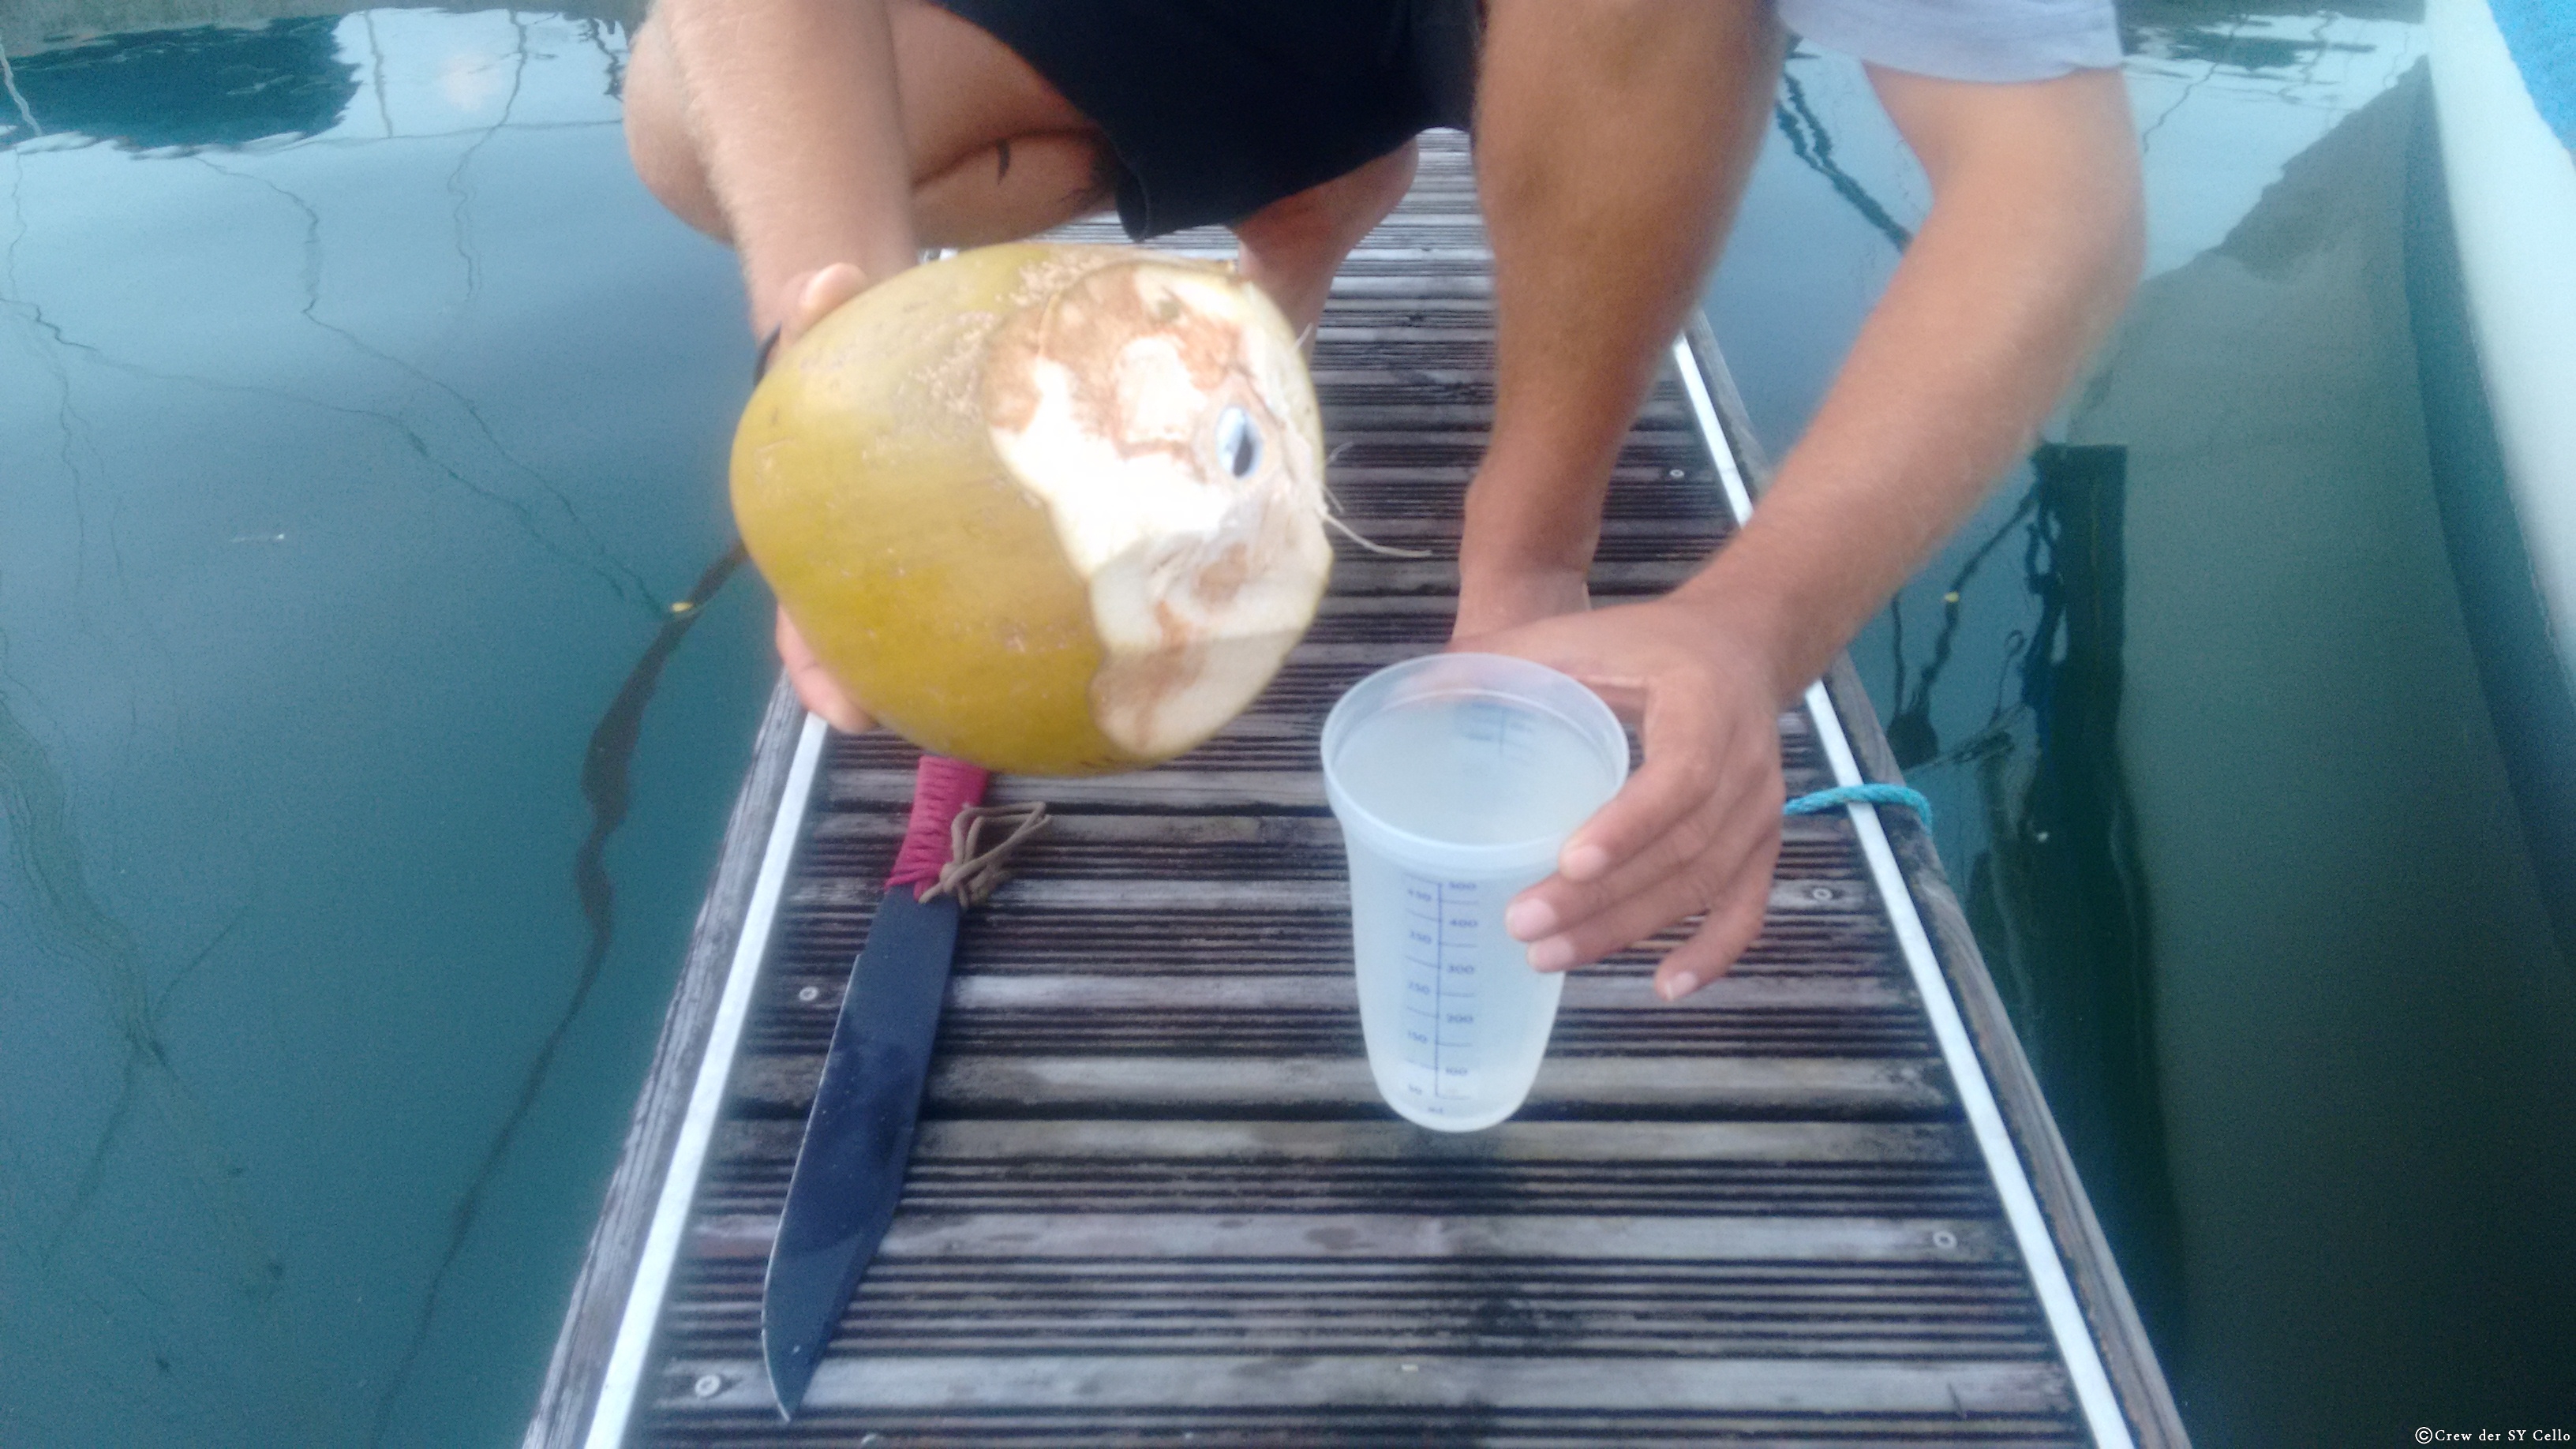 &hellip; eine Kokosnuss ist offen, liefert 500 ml Wasser/Saft.